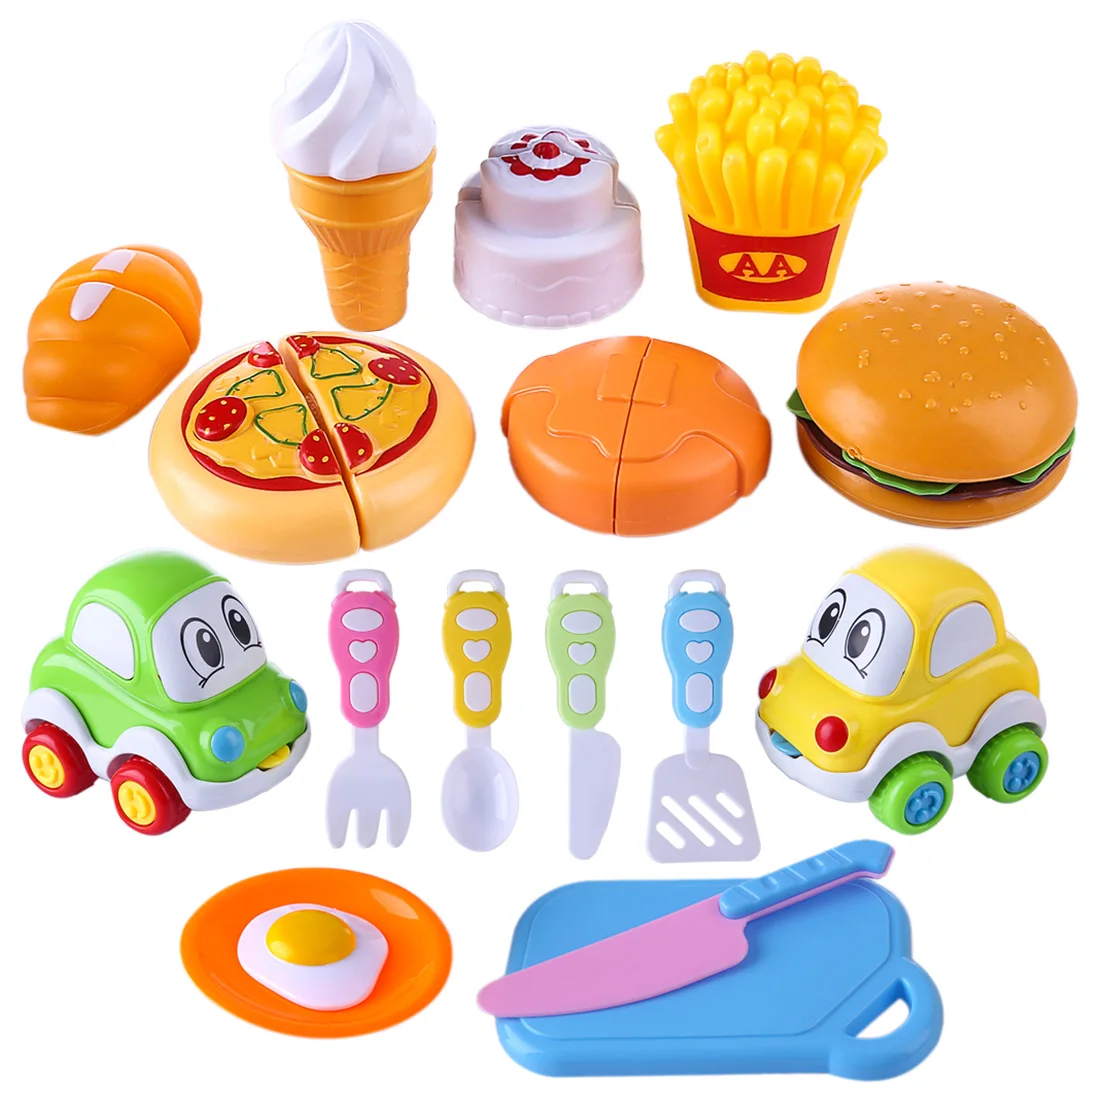 17 шт. дети ролевые игры кухонные игрушки искусственная еда резка Playset для детей подарок на день рождения обучения пособия по кулинарии